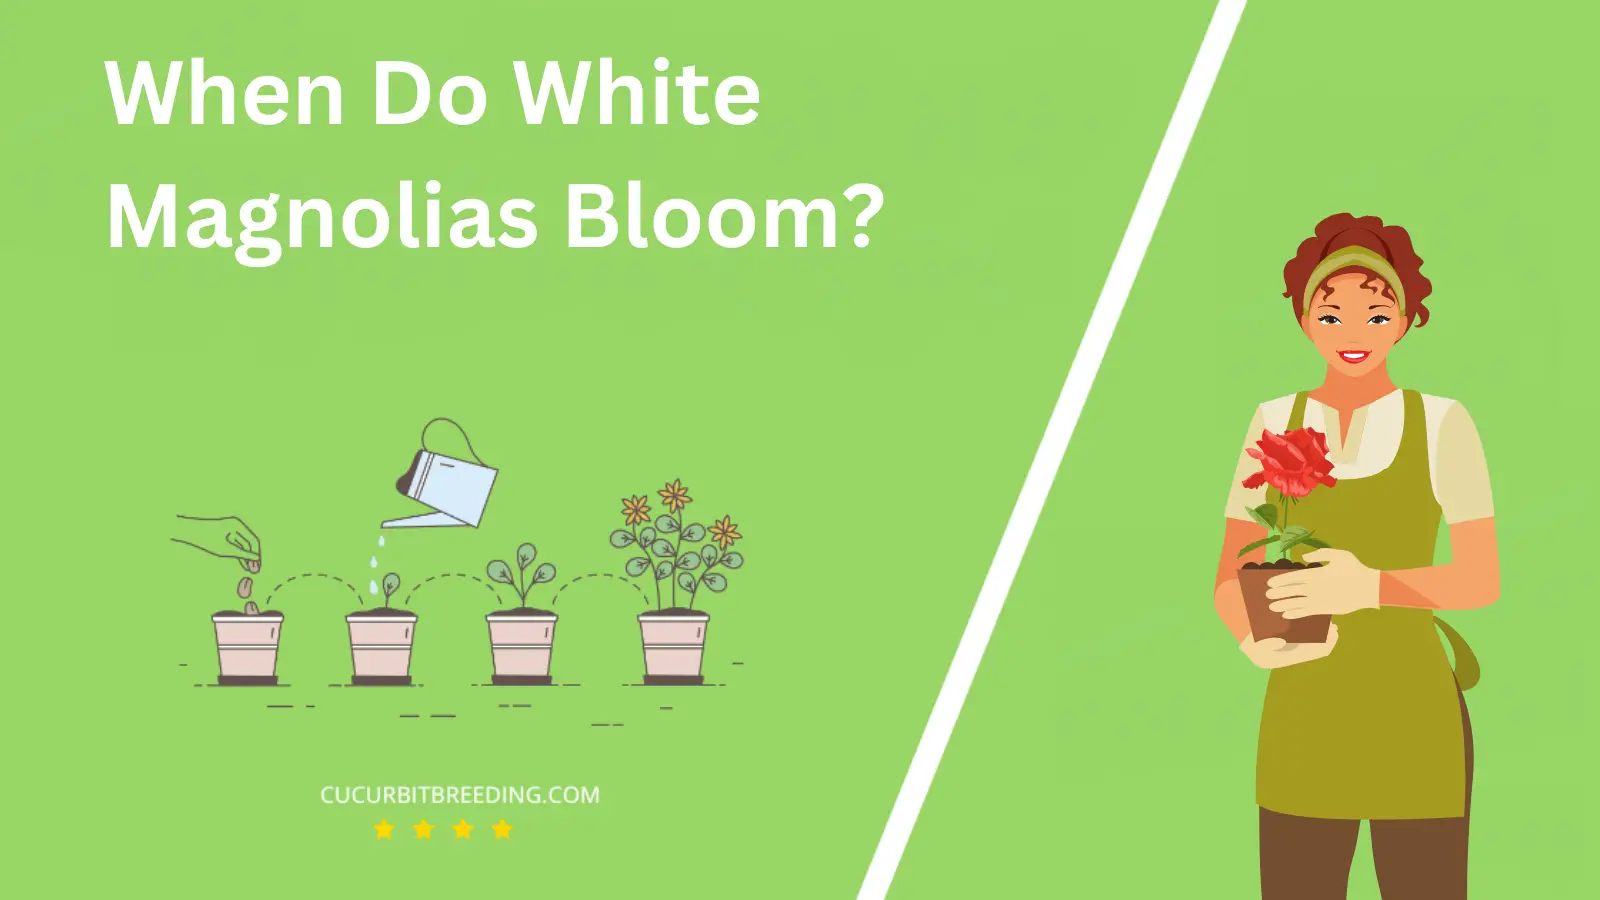 When Do White Magnolias Bloom?